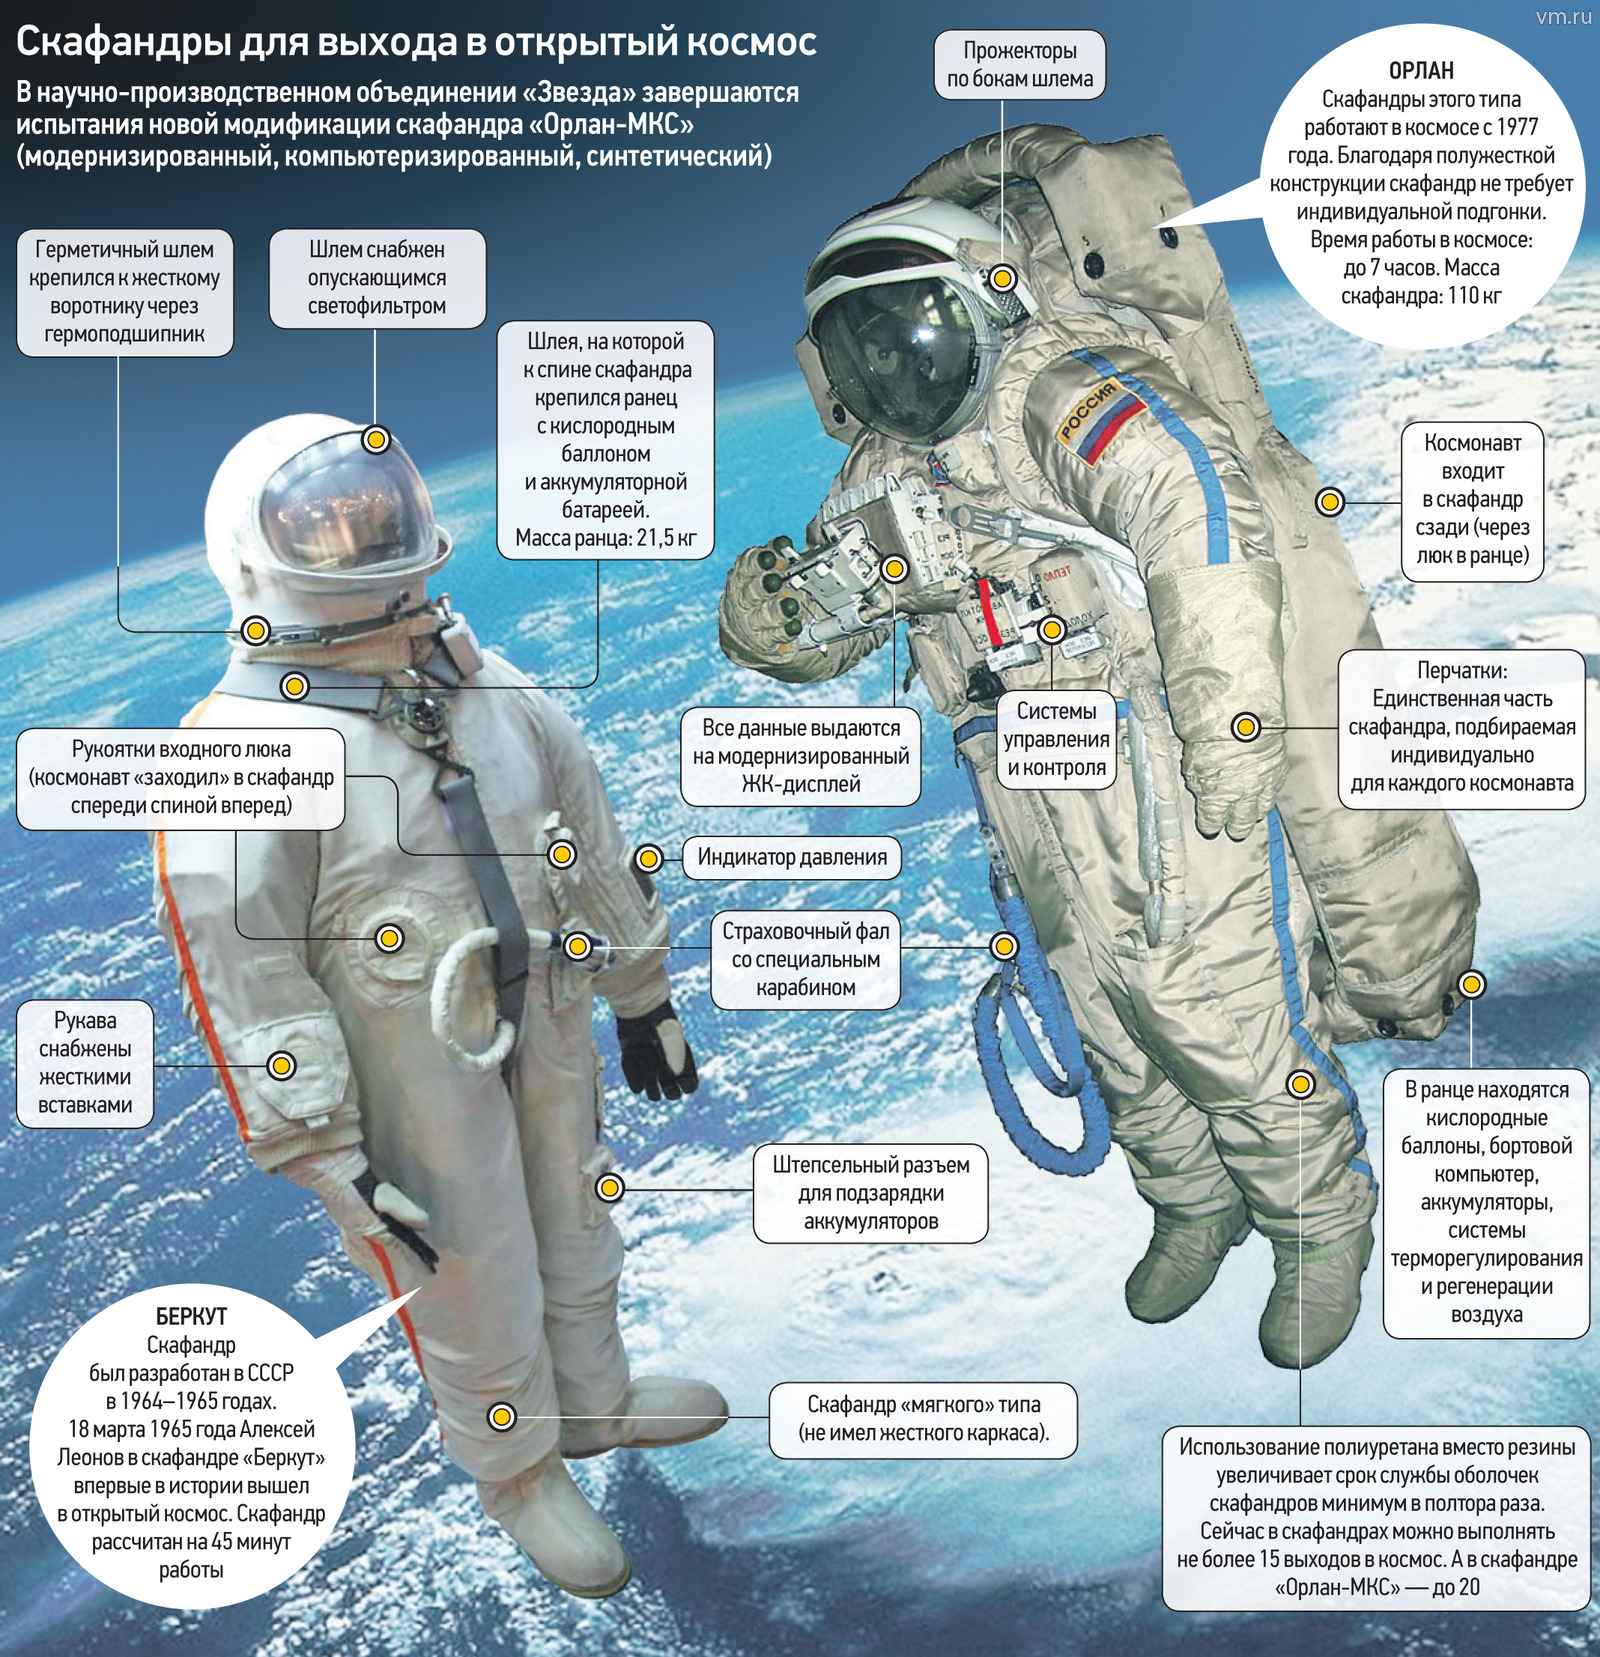 Зачем космонавту скафандр. Орлан костюм Космонавта. Из чего состоит скафандр Космонавта.